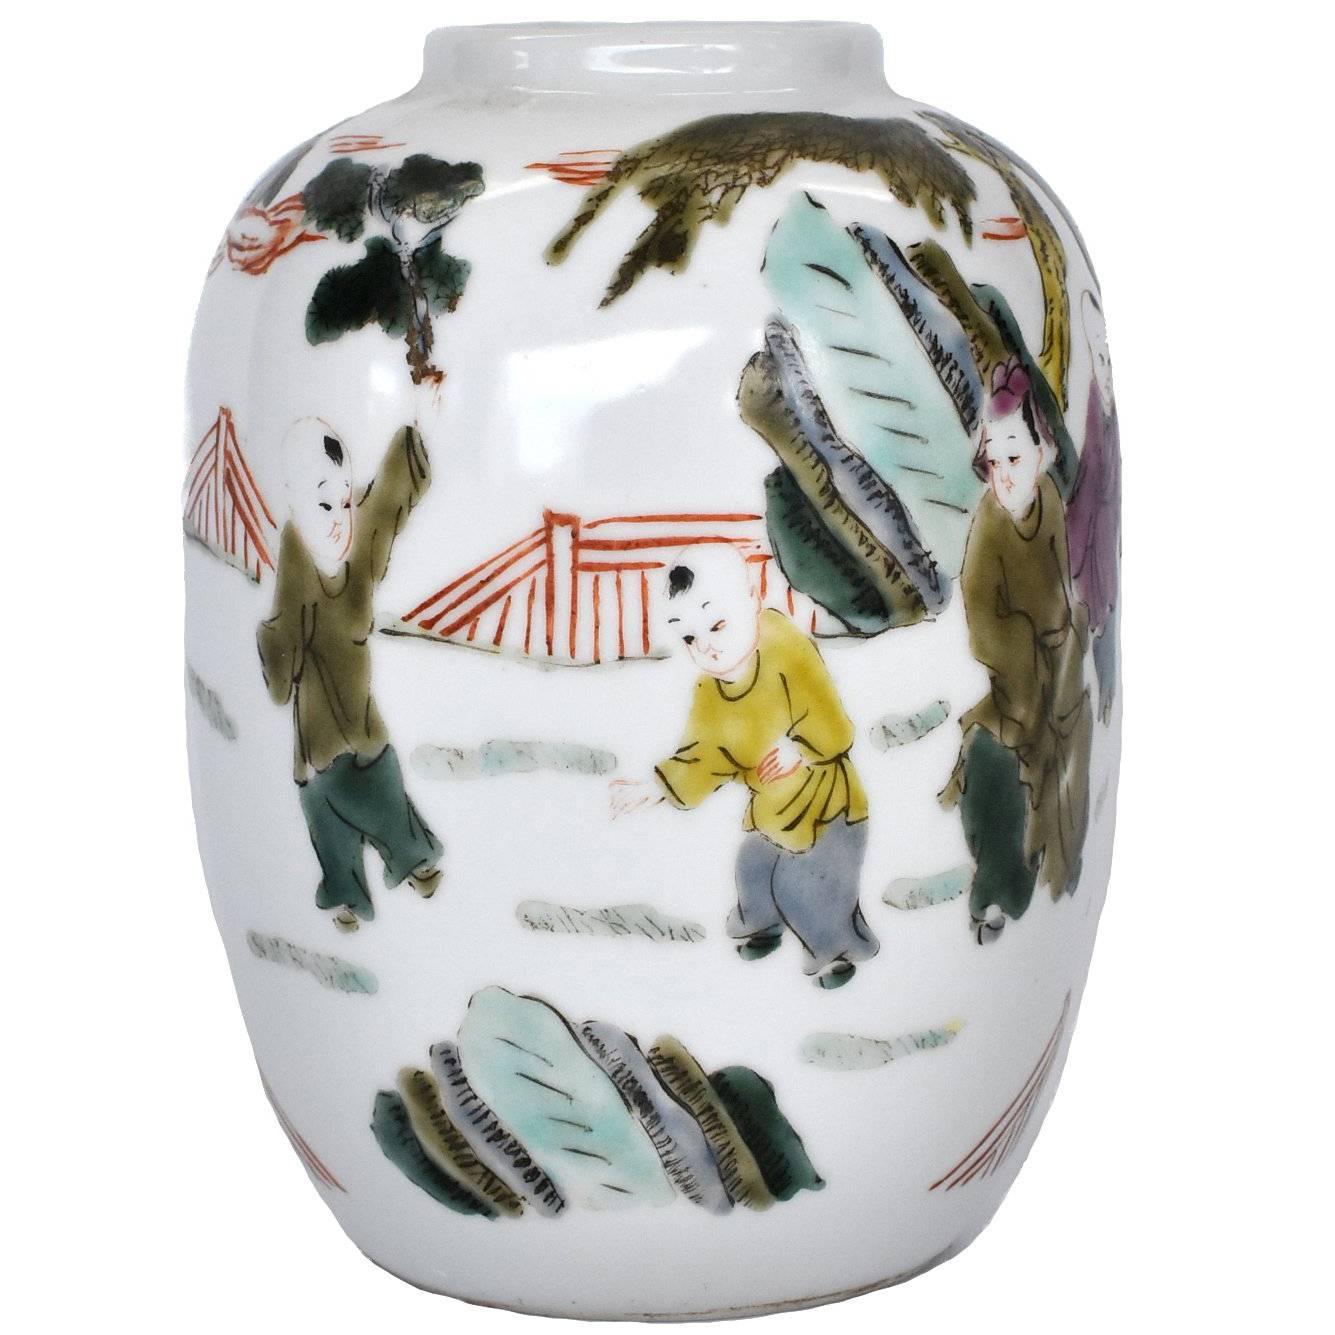 Chinese Porcelain Vase, Republic Era, with Maker's Mark